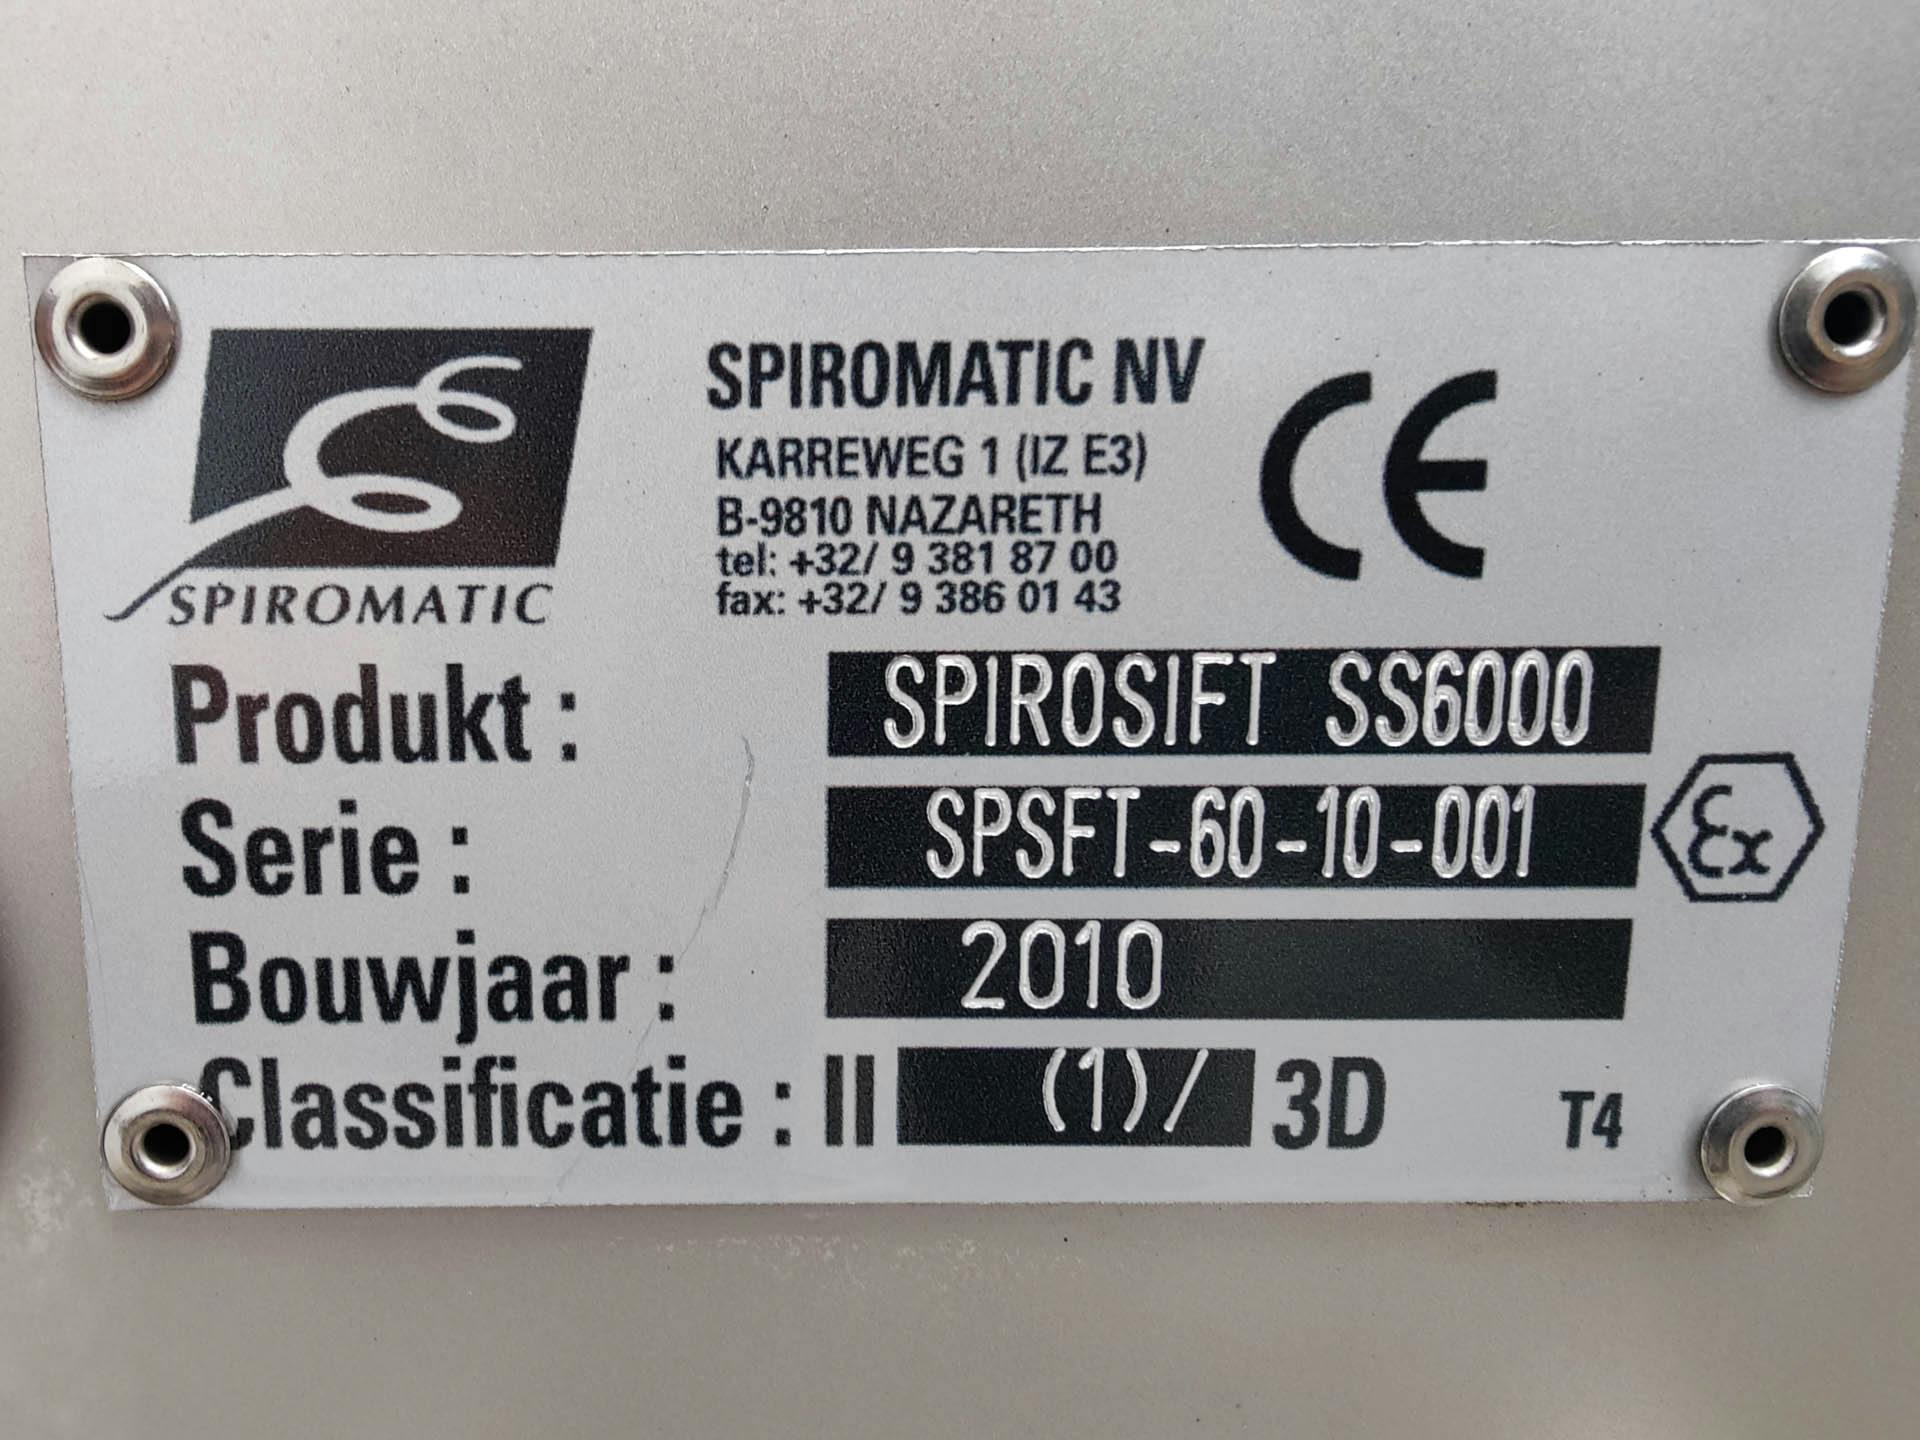 Spiromatic SPIROSIFT 6000 - Peneira rotativa - image 7